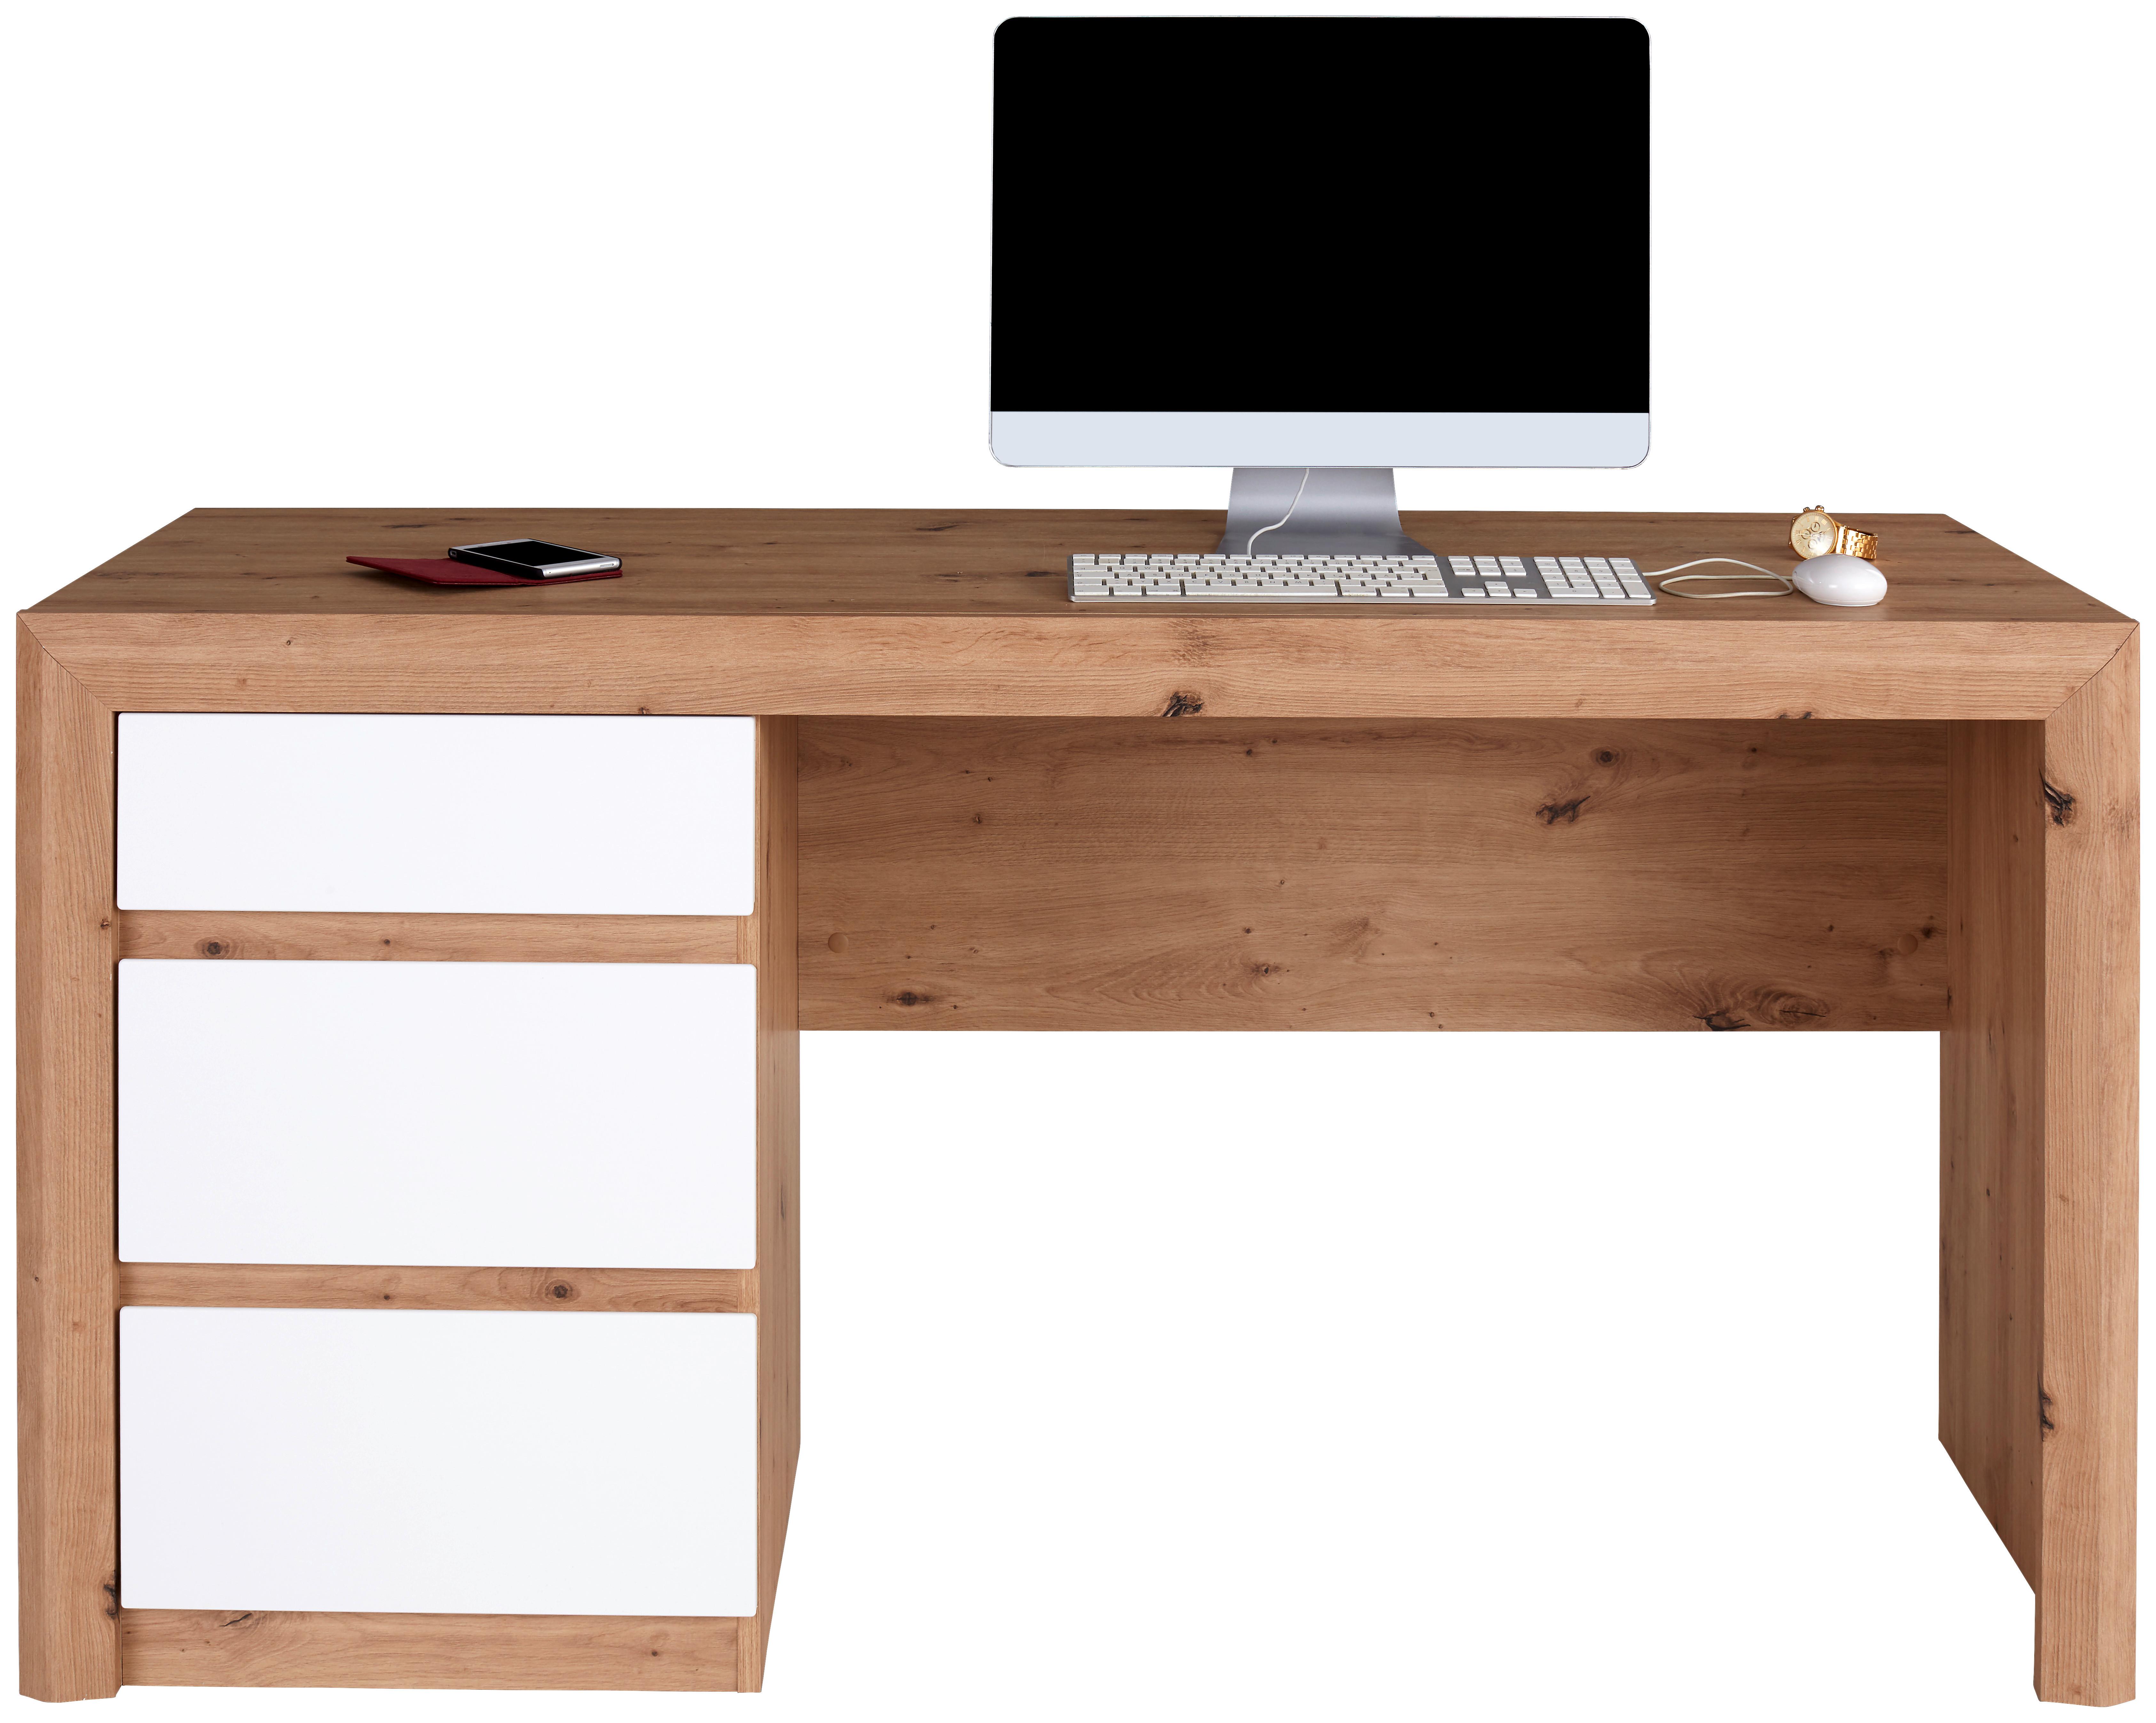 Schreibtisch mit Stauraum B 152cm H 78cm Kashmir New - Eichefarben/Weiß, MODERN, Holzwerkstoff (152/78/60cm) - James Wood